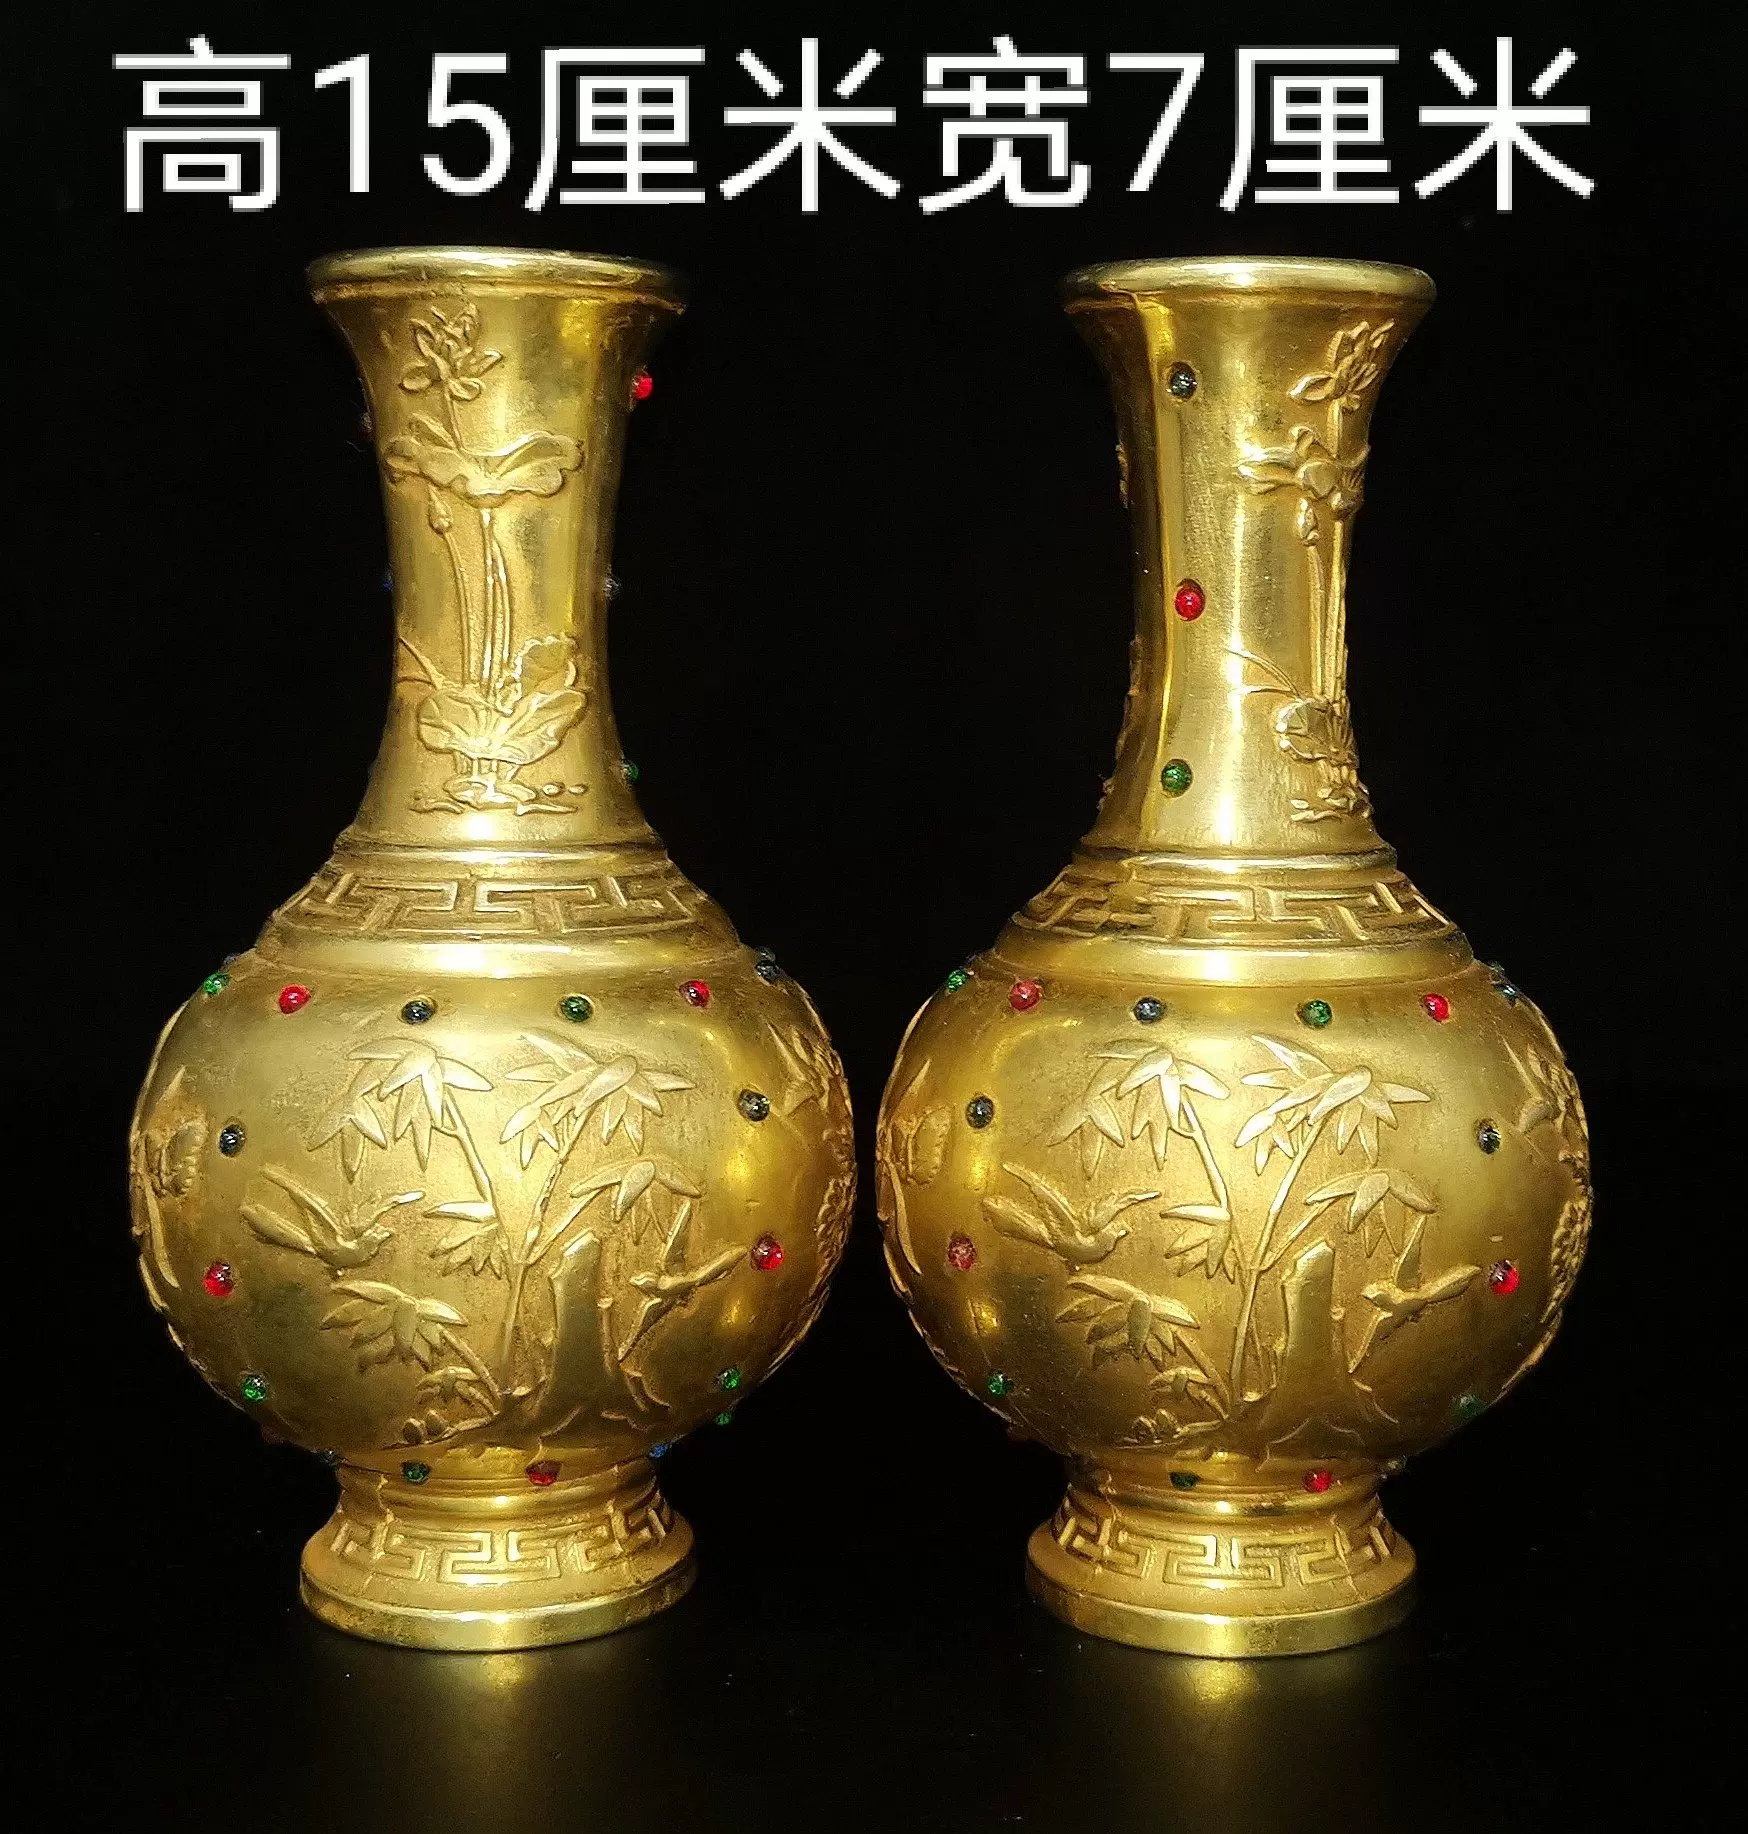 紫铜鎏真金中号台面花瓶梅花图案镶嵌蓝绿两色宝石底款乾隆年制-Taobao 